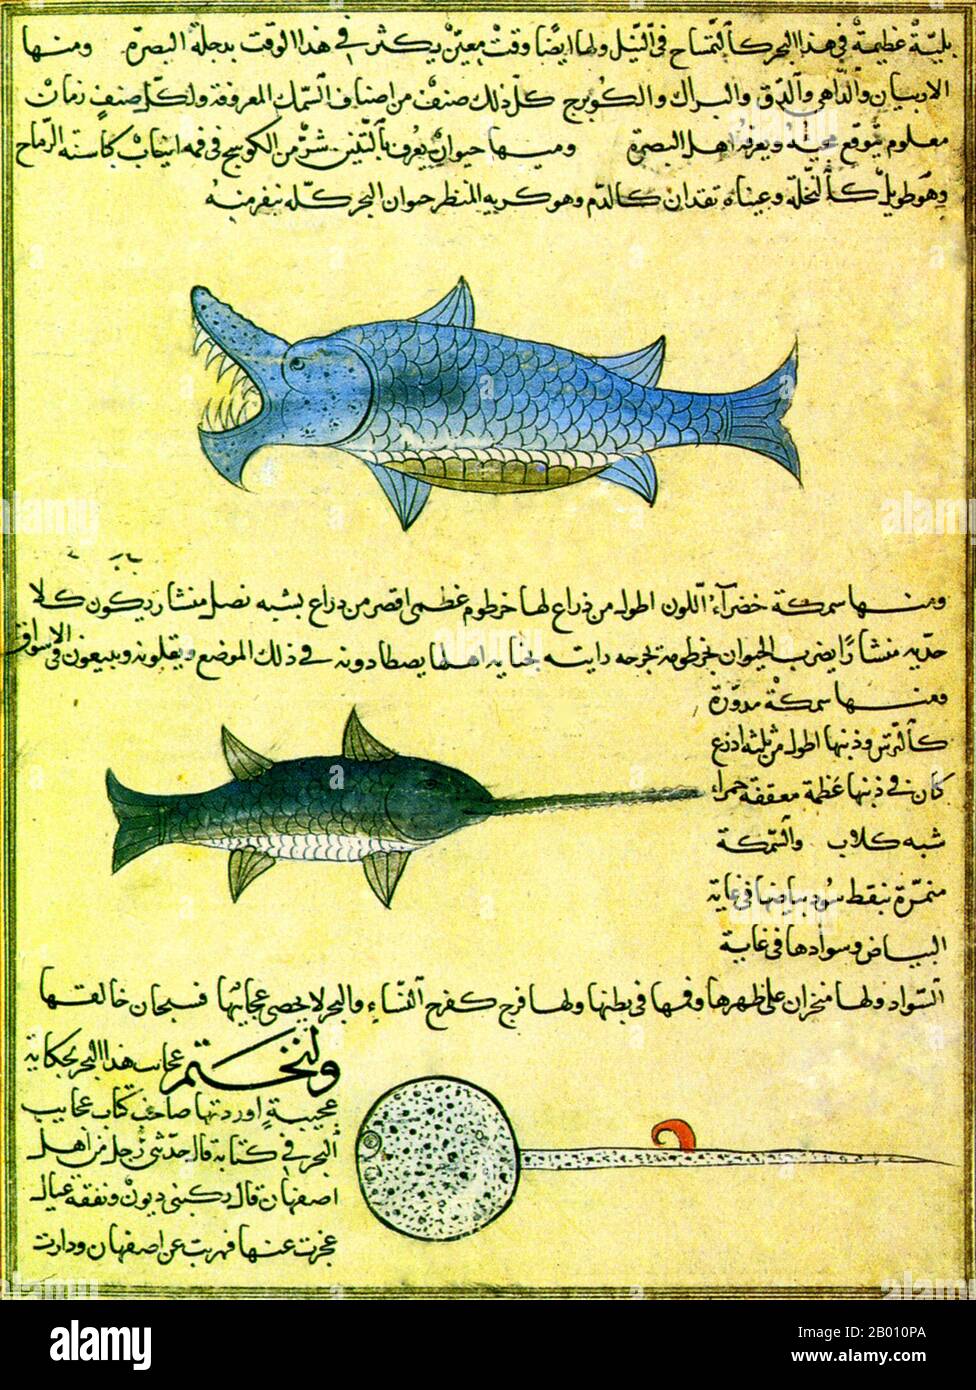 Irán/Irak: Criaturas marinas de la 'Cosmografía' de al-Qazwini. Ilustración de Zakariya al-Qazwini (1203-1283), finales del siglo 13th. Esta página muestra un tiburón, un pez espada y una raya. Zakariya ibn Muhammad ibn Mahmud al-Qazwini (1203-1283) fue un médico persa, astrónomo, geógrafo y escritor de ficción proto-ciencia. Su famosa cosmografía en árabe titulada ‘Aja’ib al-makhluqat wa-ghe’ (literalmente ‘Marvels of Creatures and Strange Things existing’) es un tratado frecuentemente ilustrado. Fue inmensamente popular en su tiempo y se conserva hoy, también traducido en persa y turco. Foto de stock